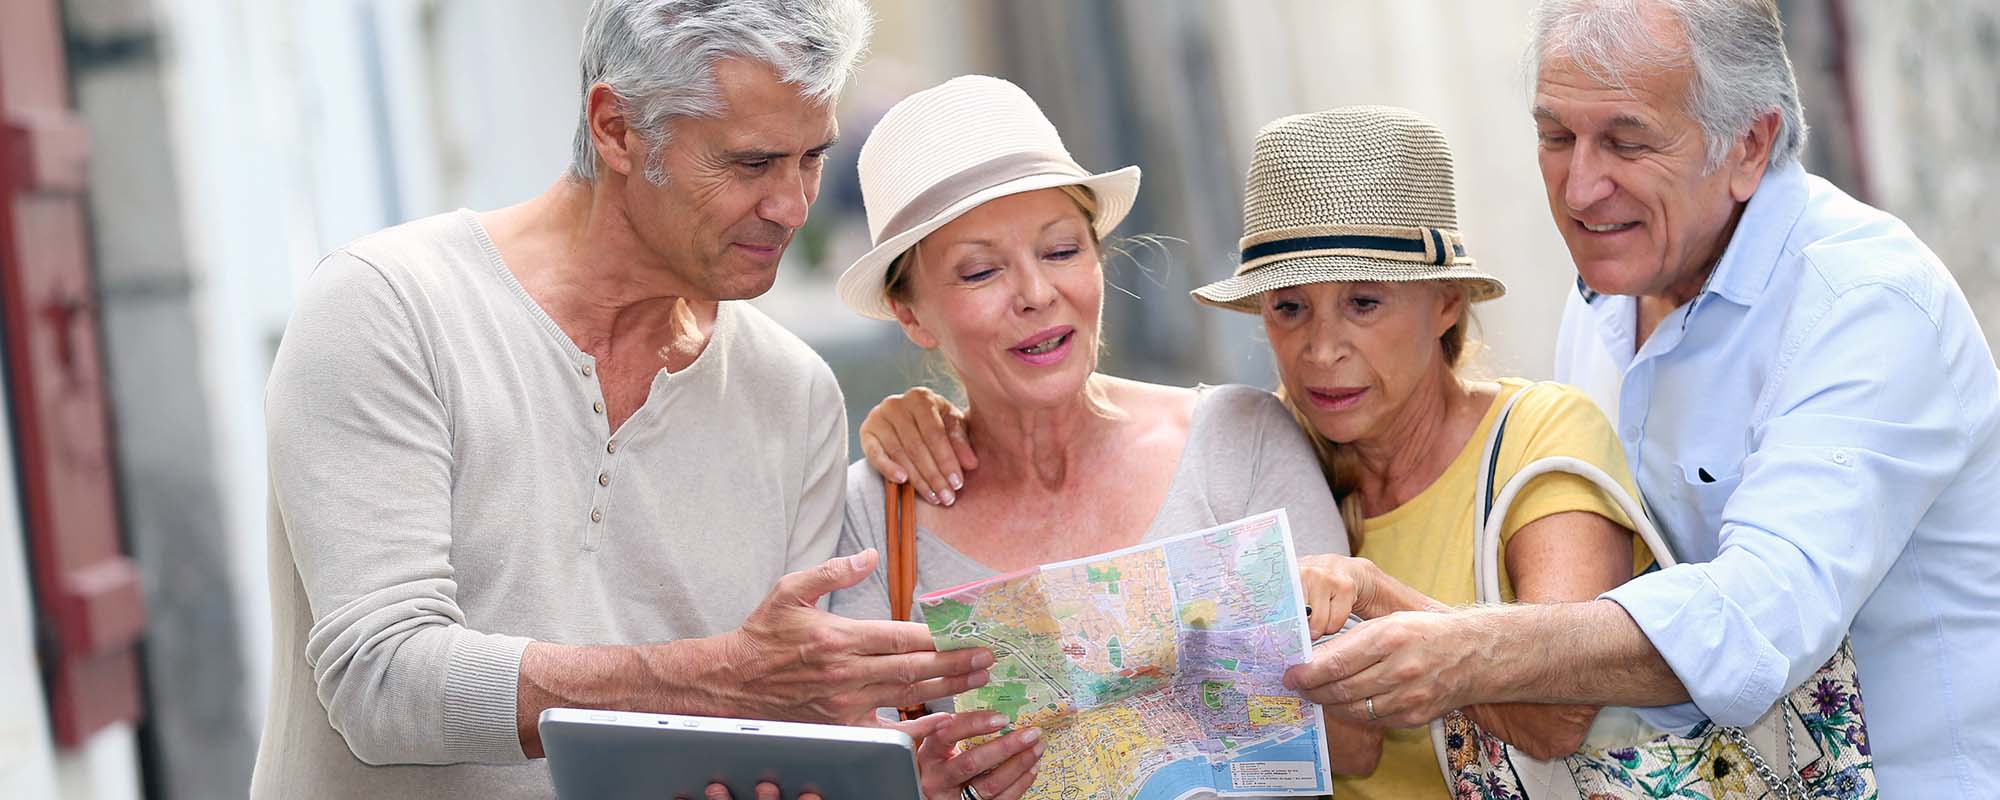 Touristen - Senioren - Stadtplan